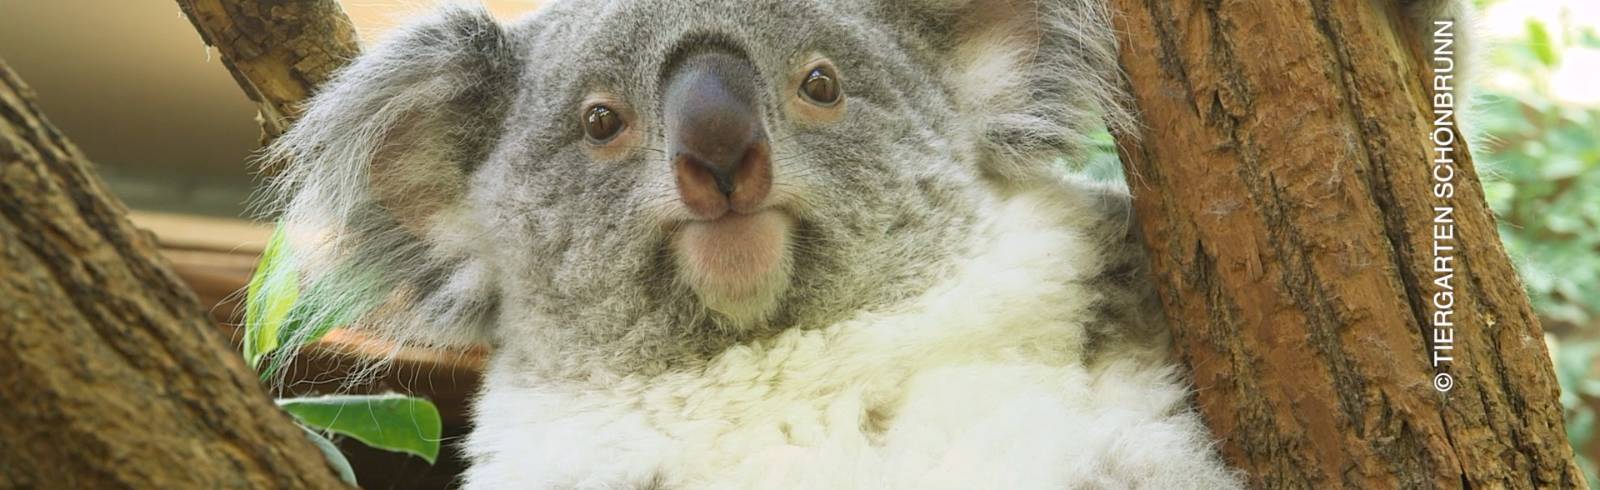 Bezirksflash: Erstes Koala-Baby in Schönbrunn